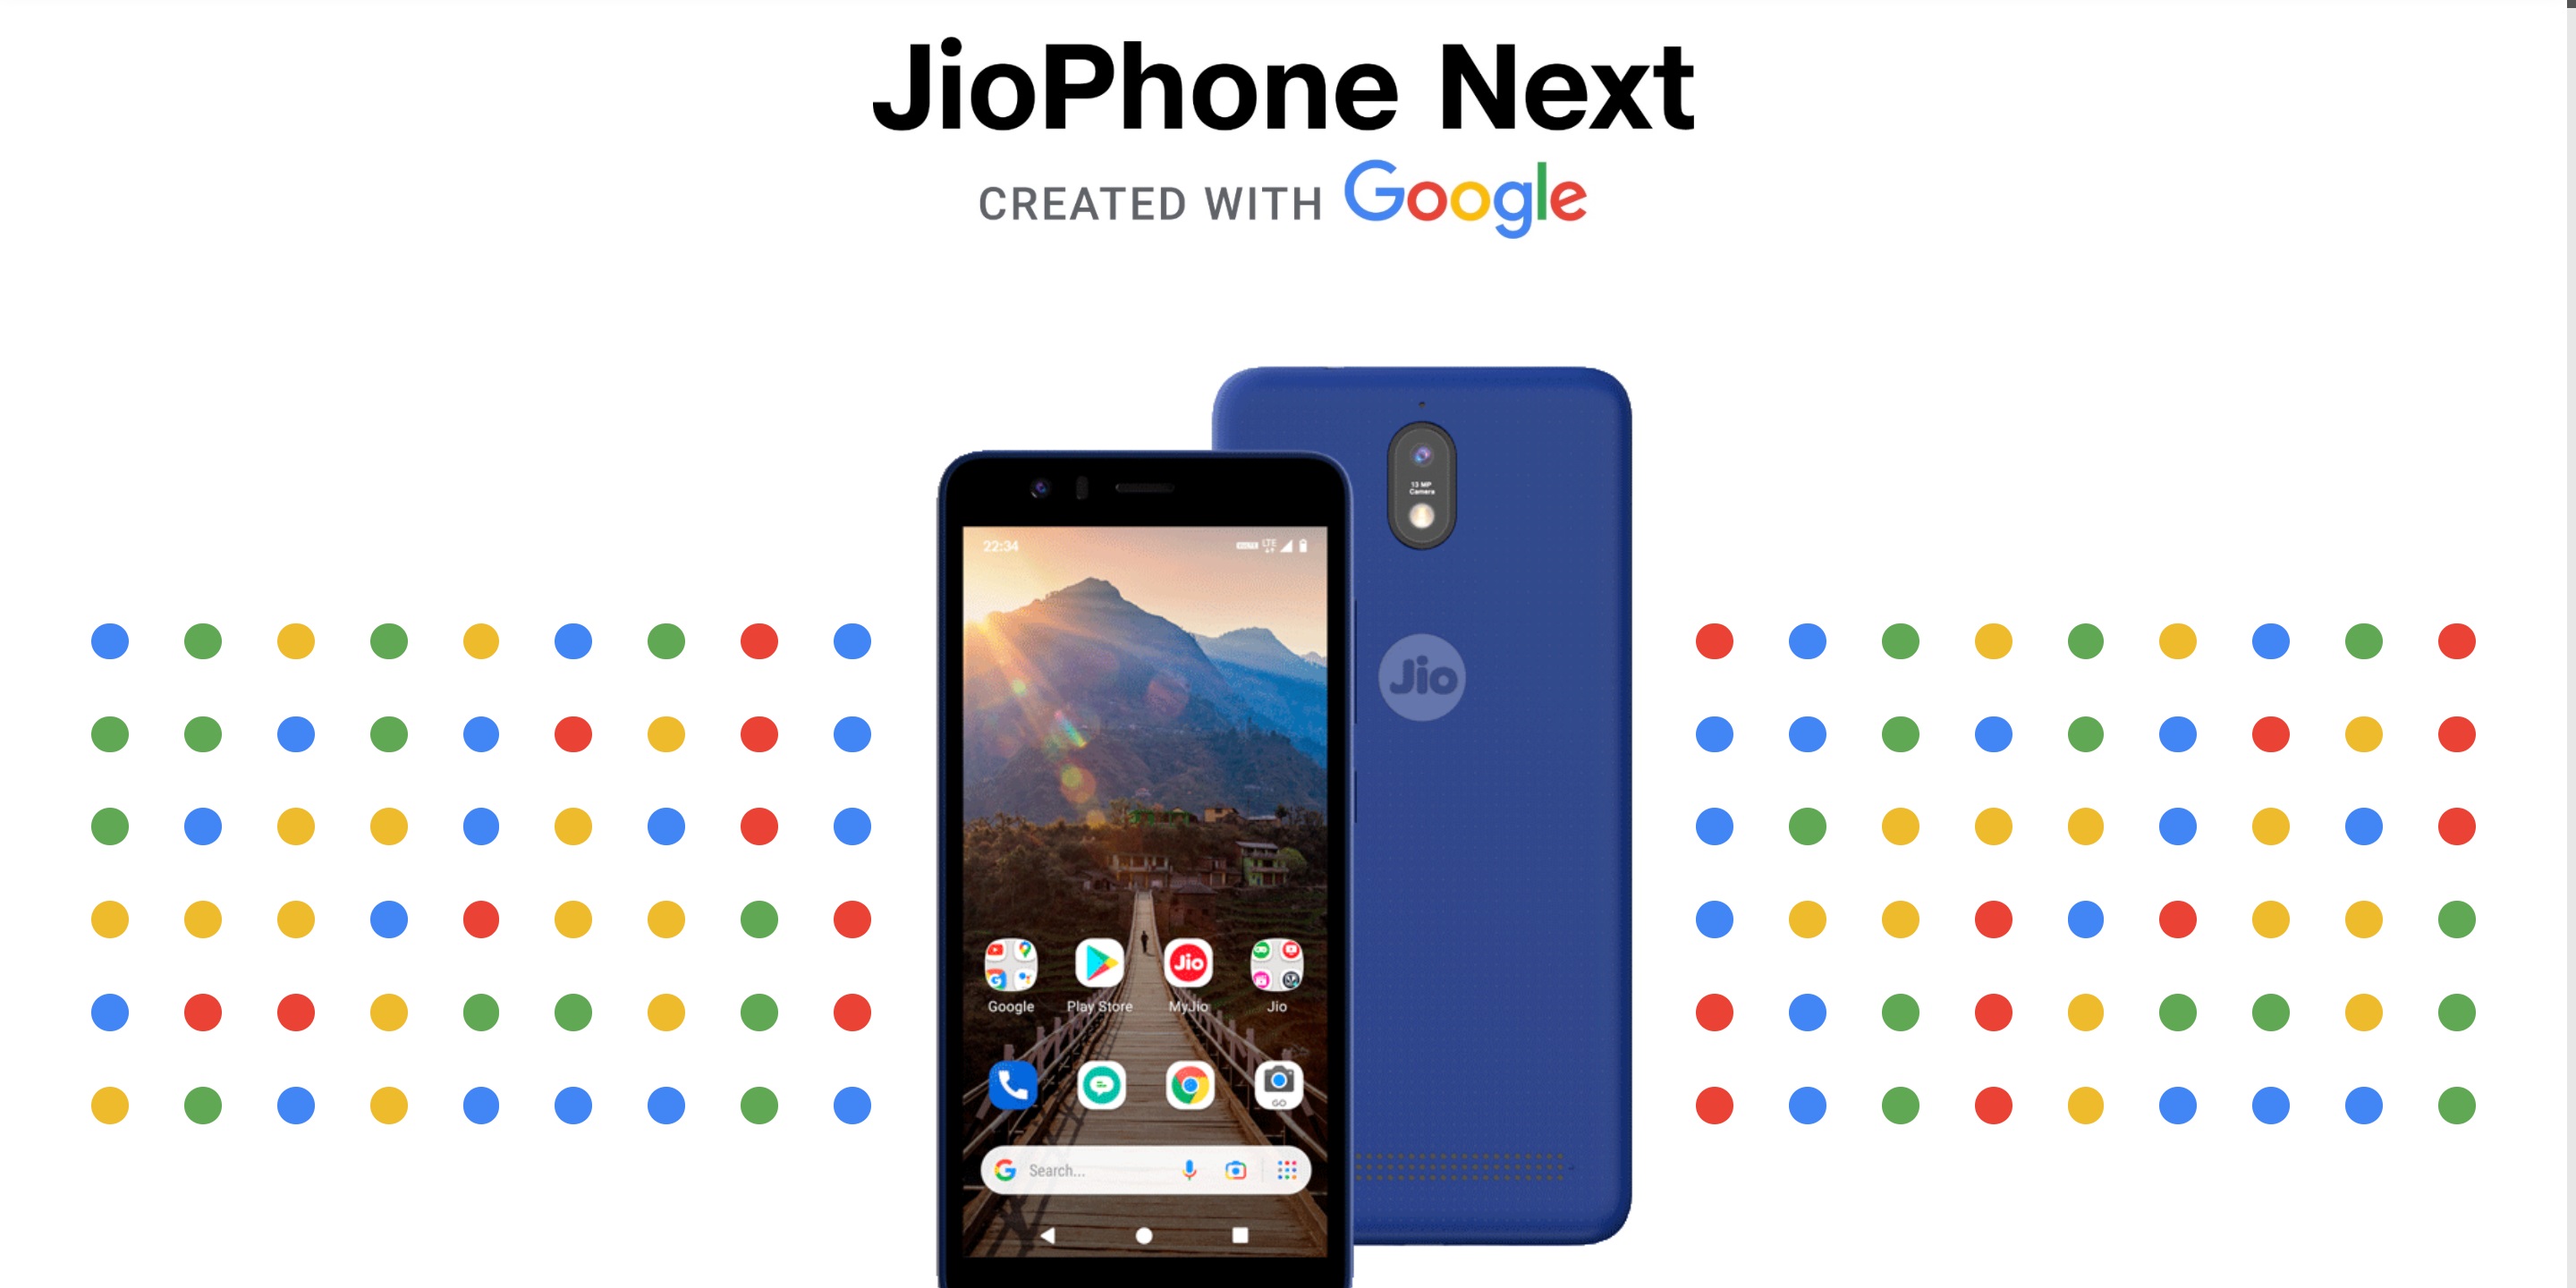 Cena "najtańszego na świecie smartfona 4G" JioPhone Next, stworzonego we współpracy z Google, została w końcu ogłoszona